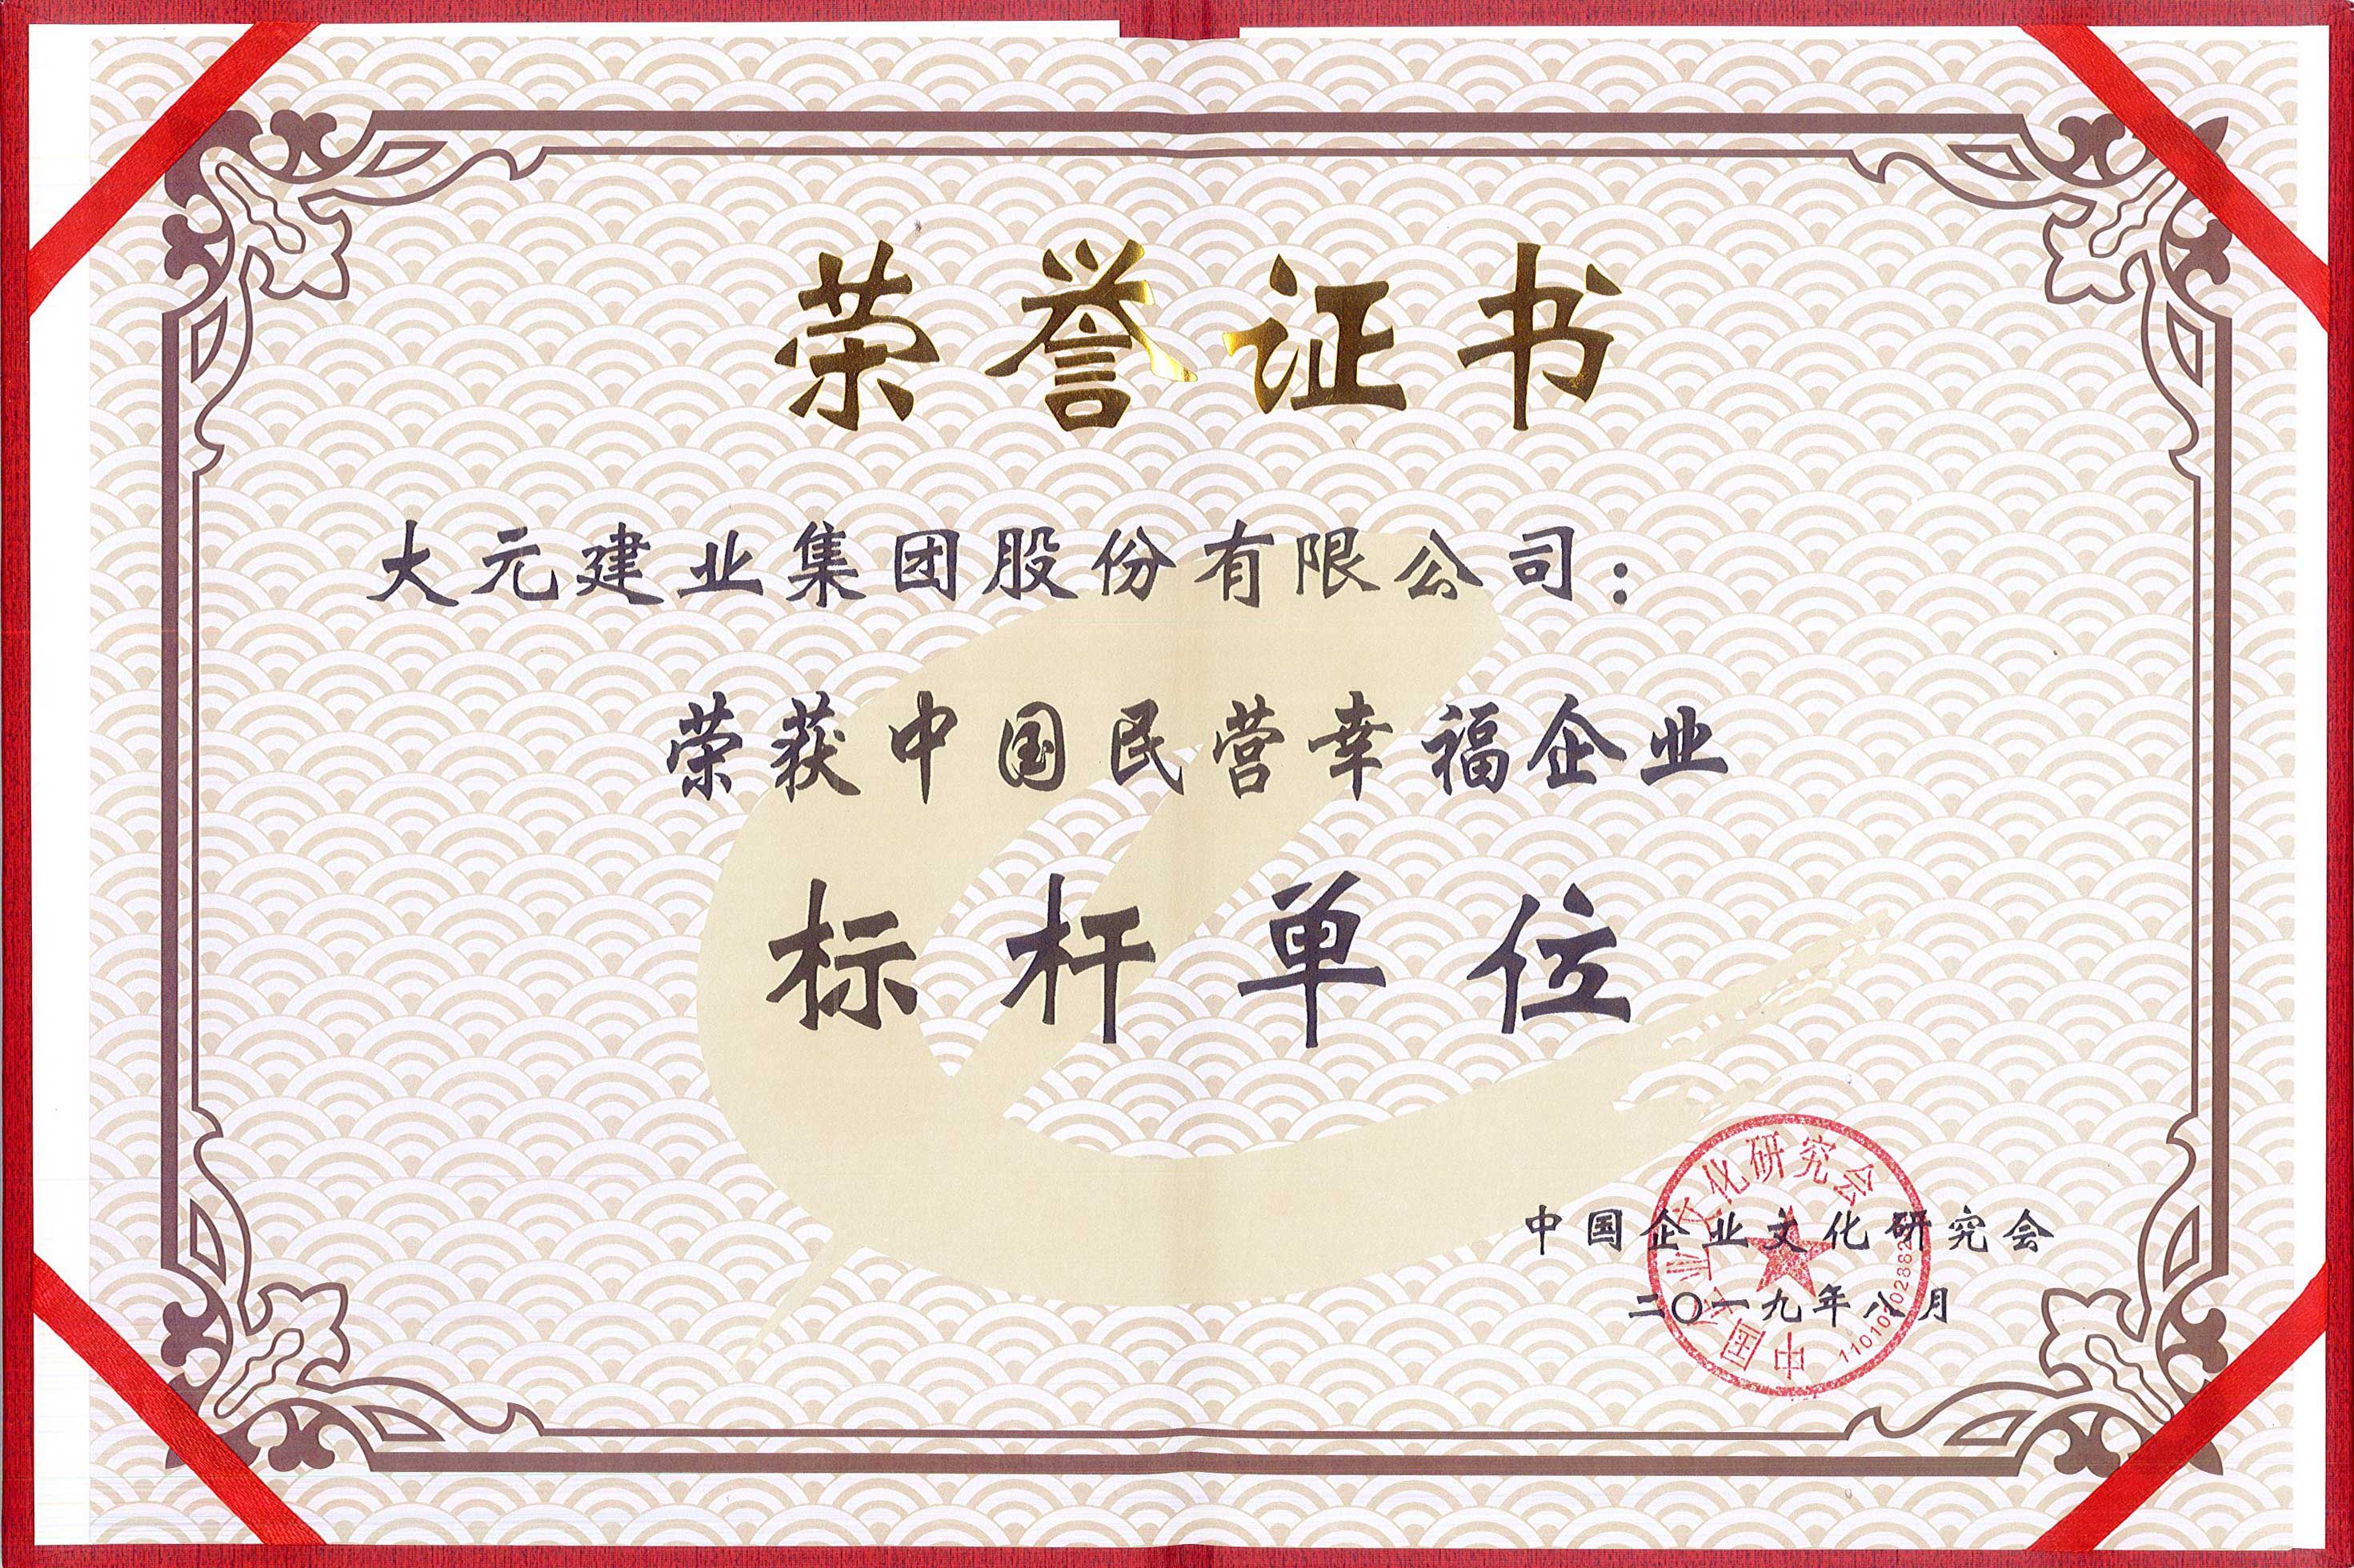 大元集团荣获中国民营幸福企业标杆单位